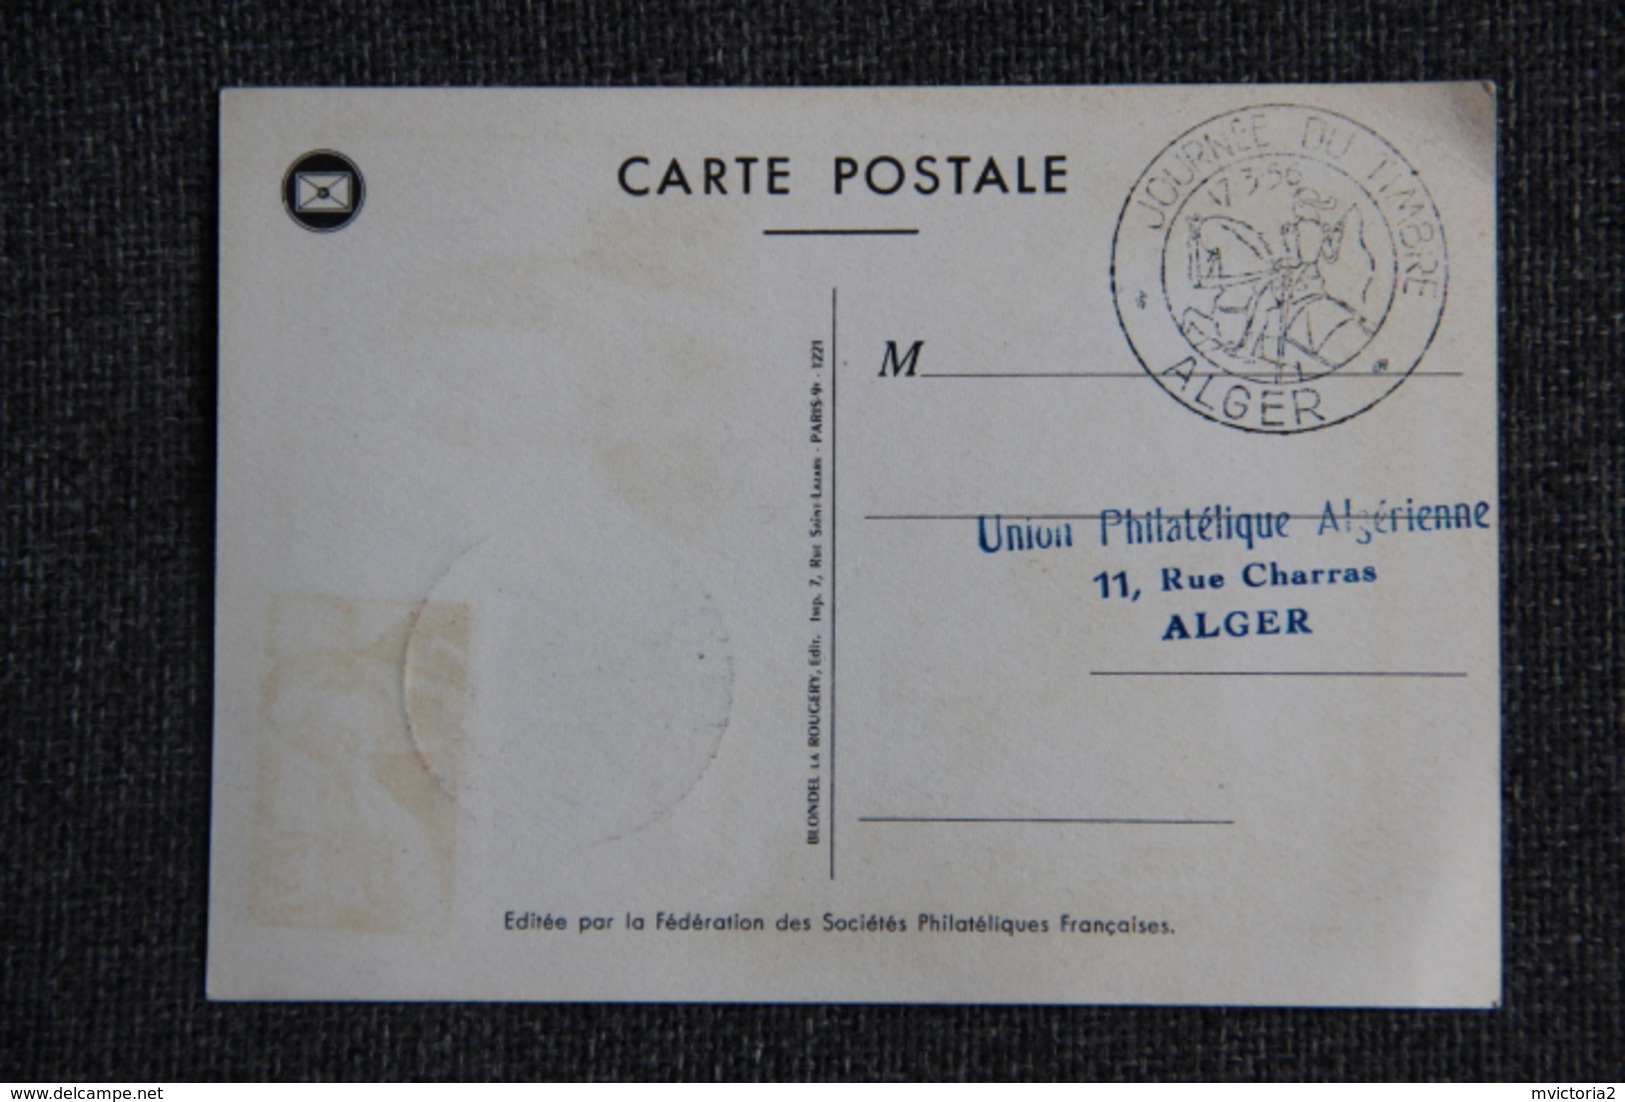 Union Philatélique ALGERIENNE - Journée Nationale Du Timbre 1956. - Covers & Documents